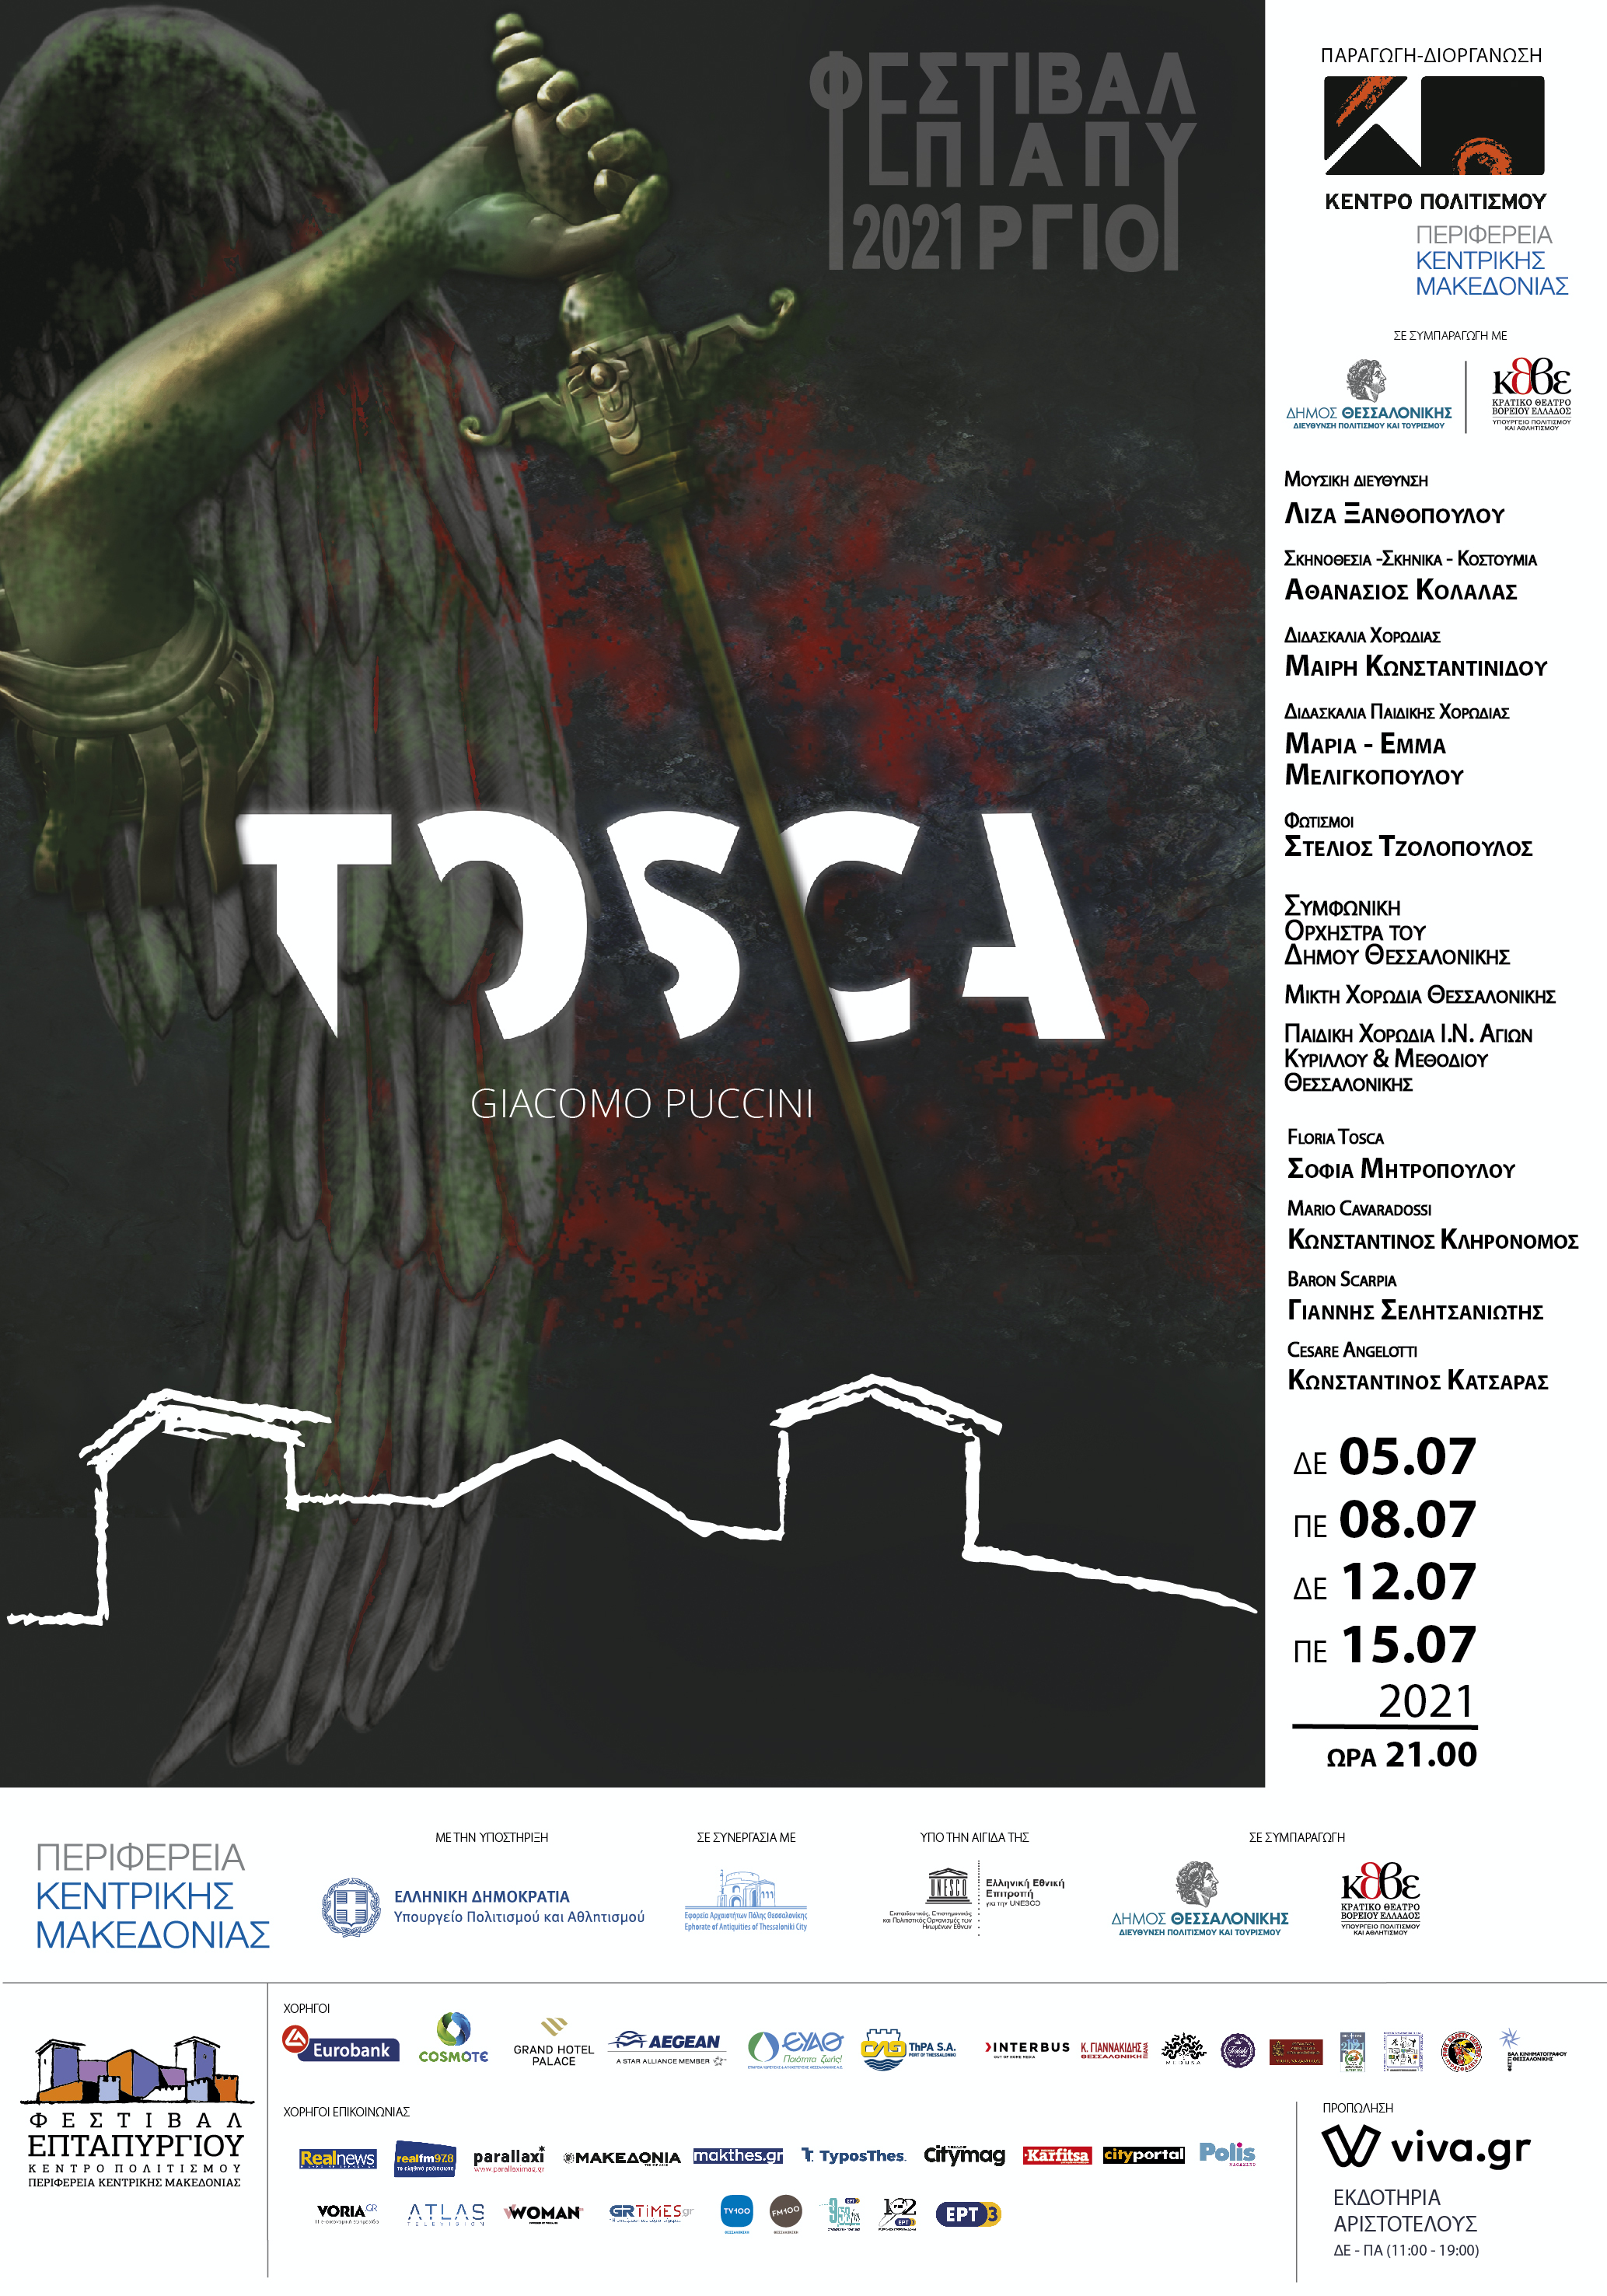 Το ΚΘΒΕ στο Φεστιβάλ Επταπυργίου  «Tosca» του Πουτσίνι 5, 8, 12 και 15 Ιουλίου